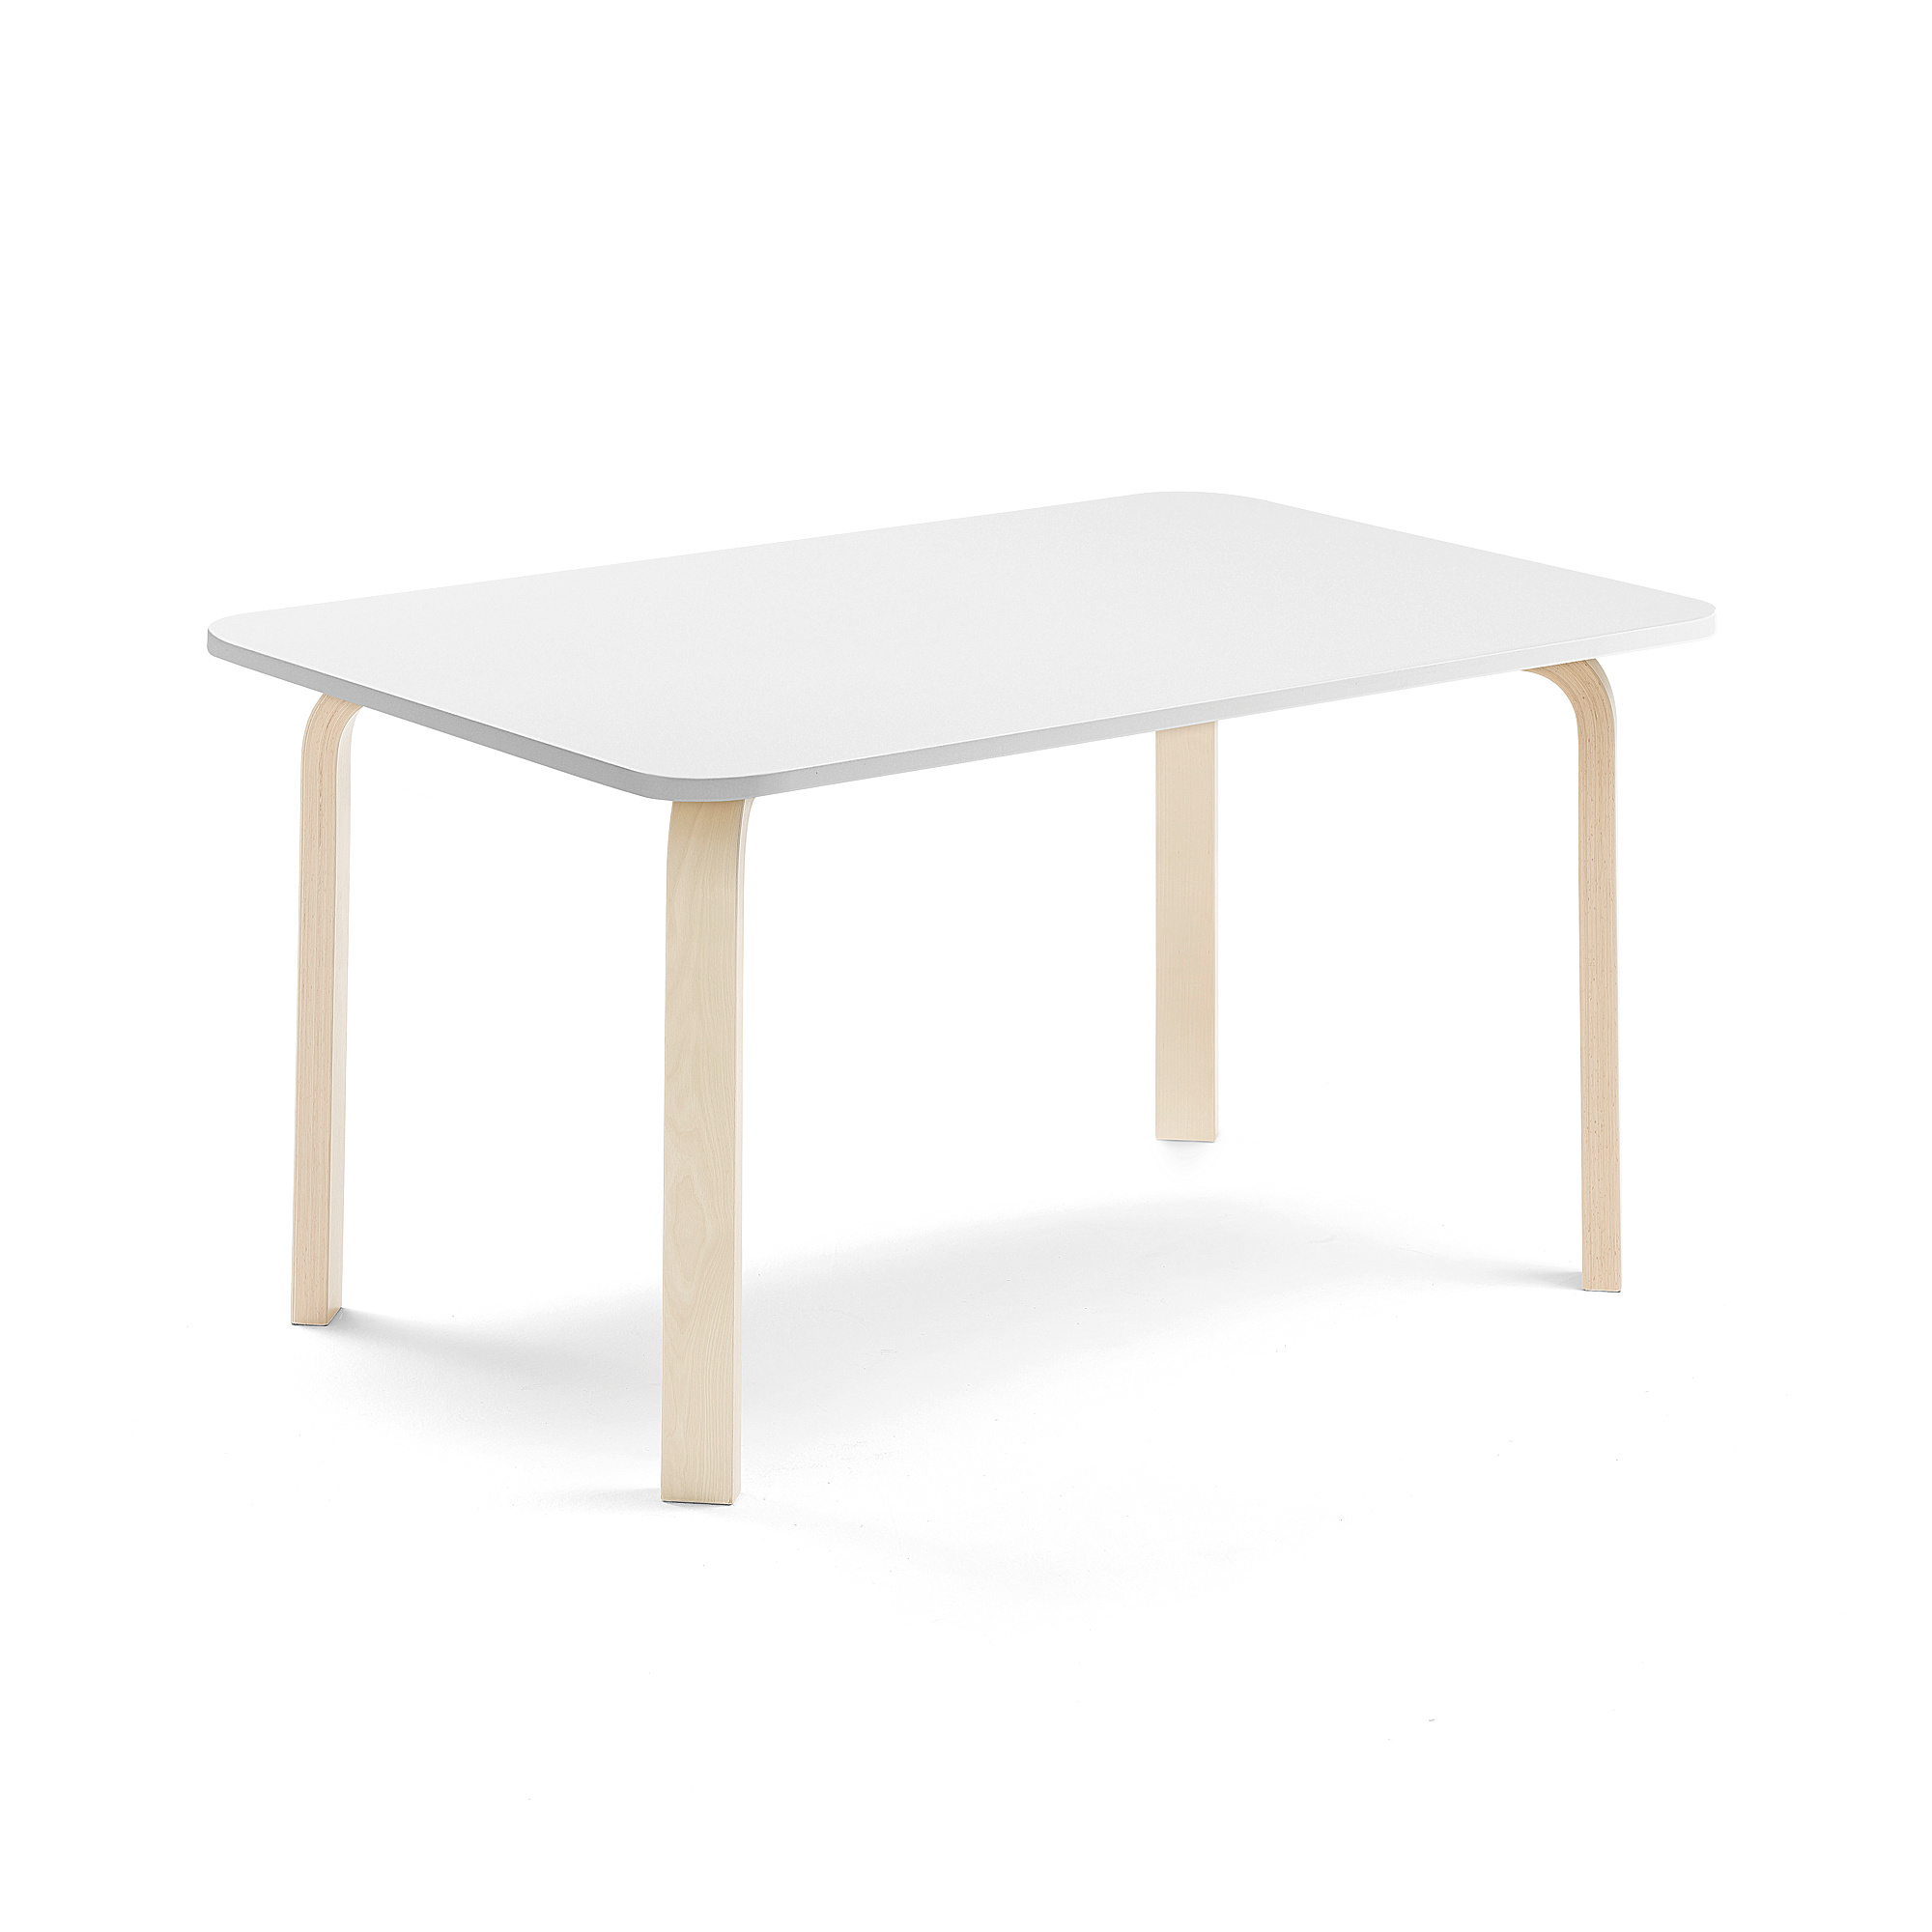 Stůl ELTON, 1200x600x590 mm, bříza, akustická HPL deska, bílá